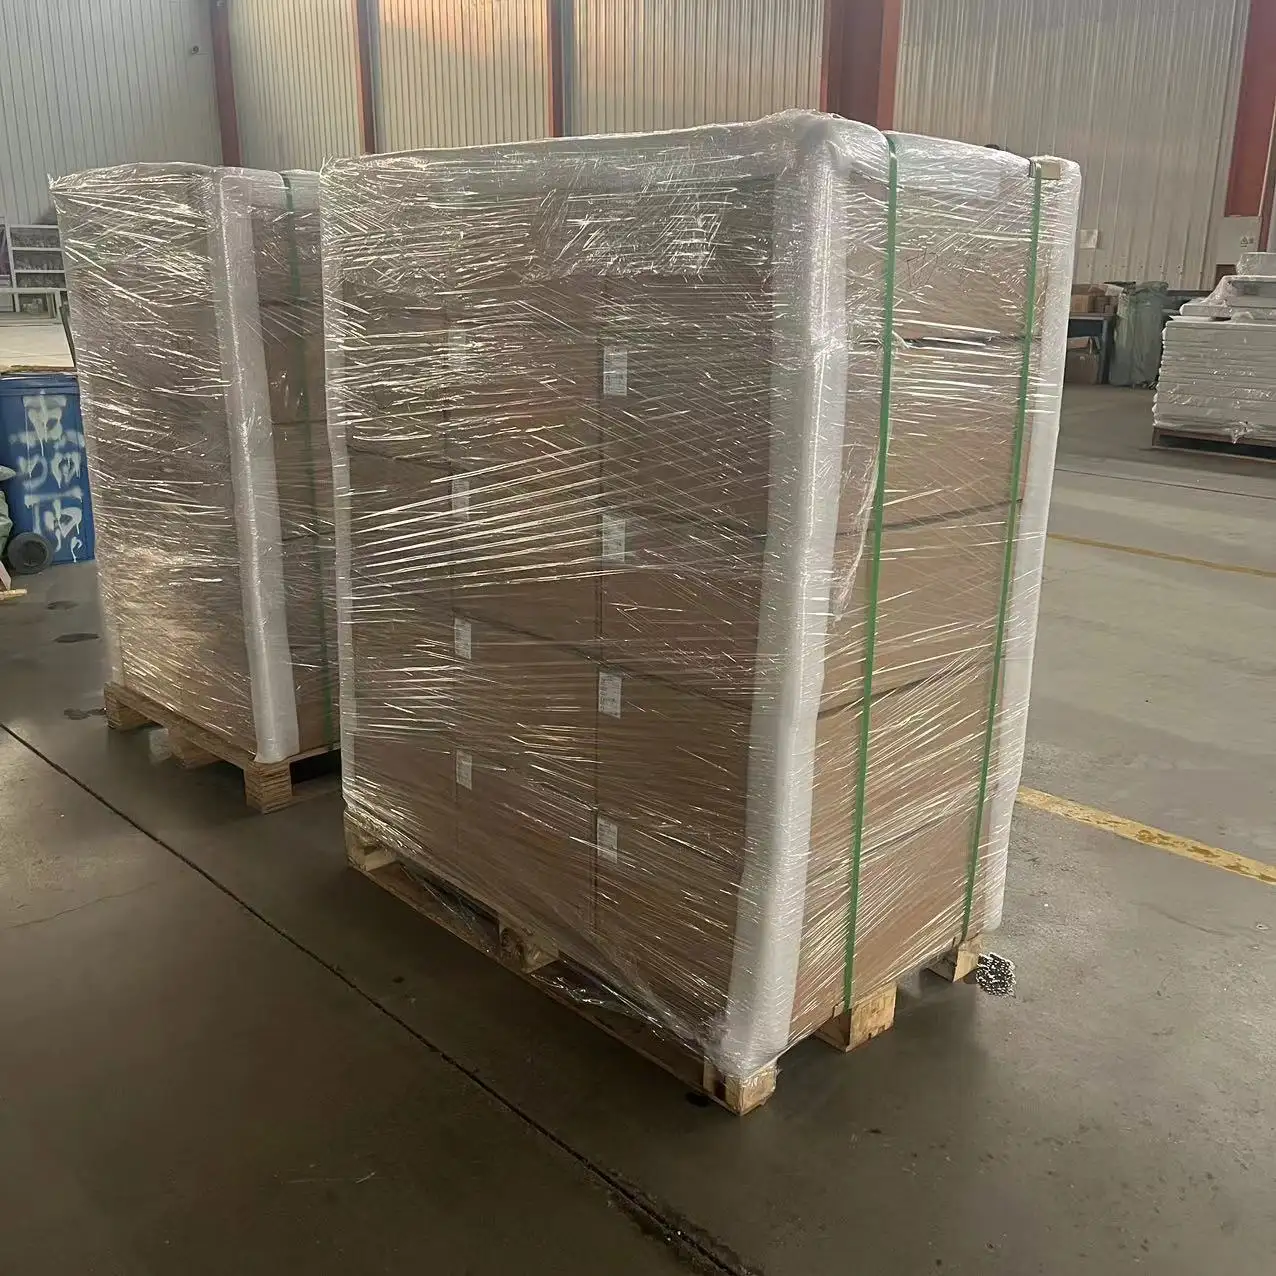 निर्माता वितरण बॉक्स वितरण कैबिनेट धातु उत्पाद हार्डवेयर प्रसंस्करण की आपूर्ति करते हैं